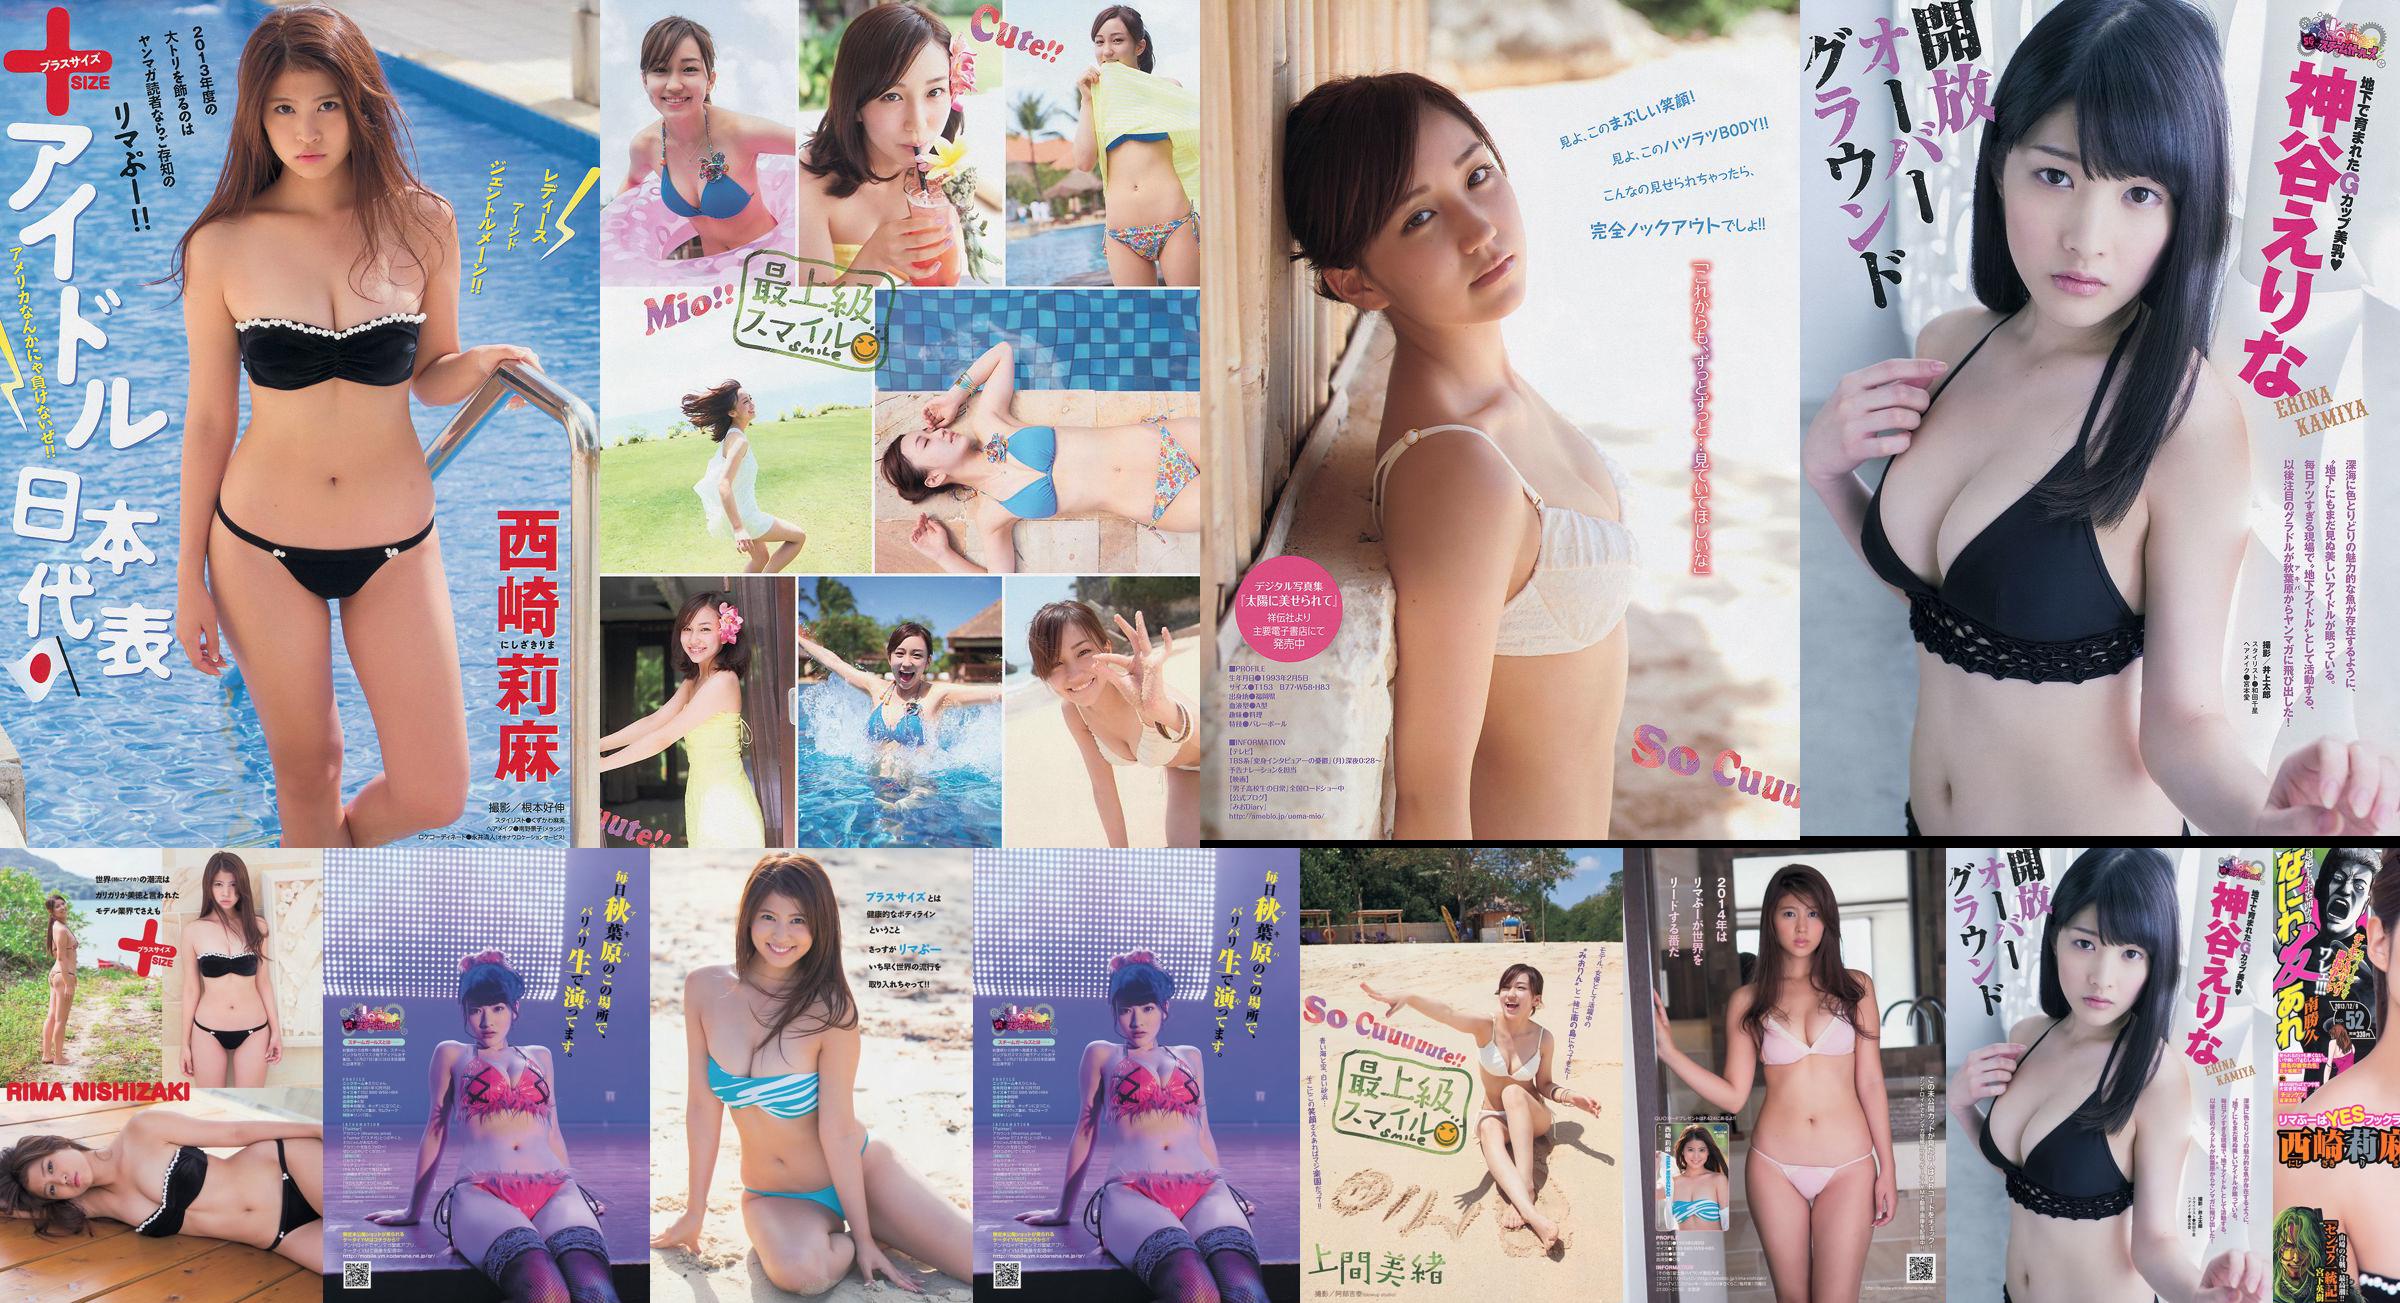 [Revista joven] Rima Nishizaki Mio Uema Erina Kamiya 2013 No.52 Photo Moshi No.61051c Página 1